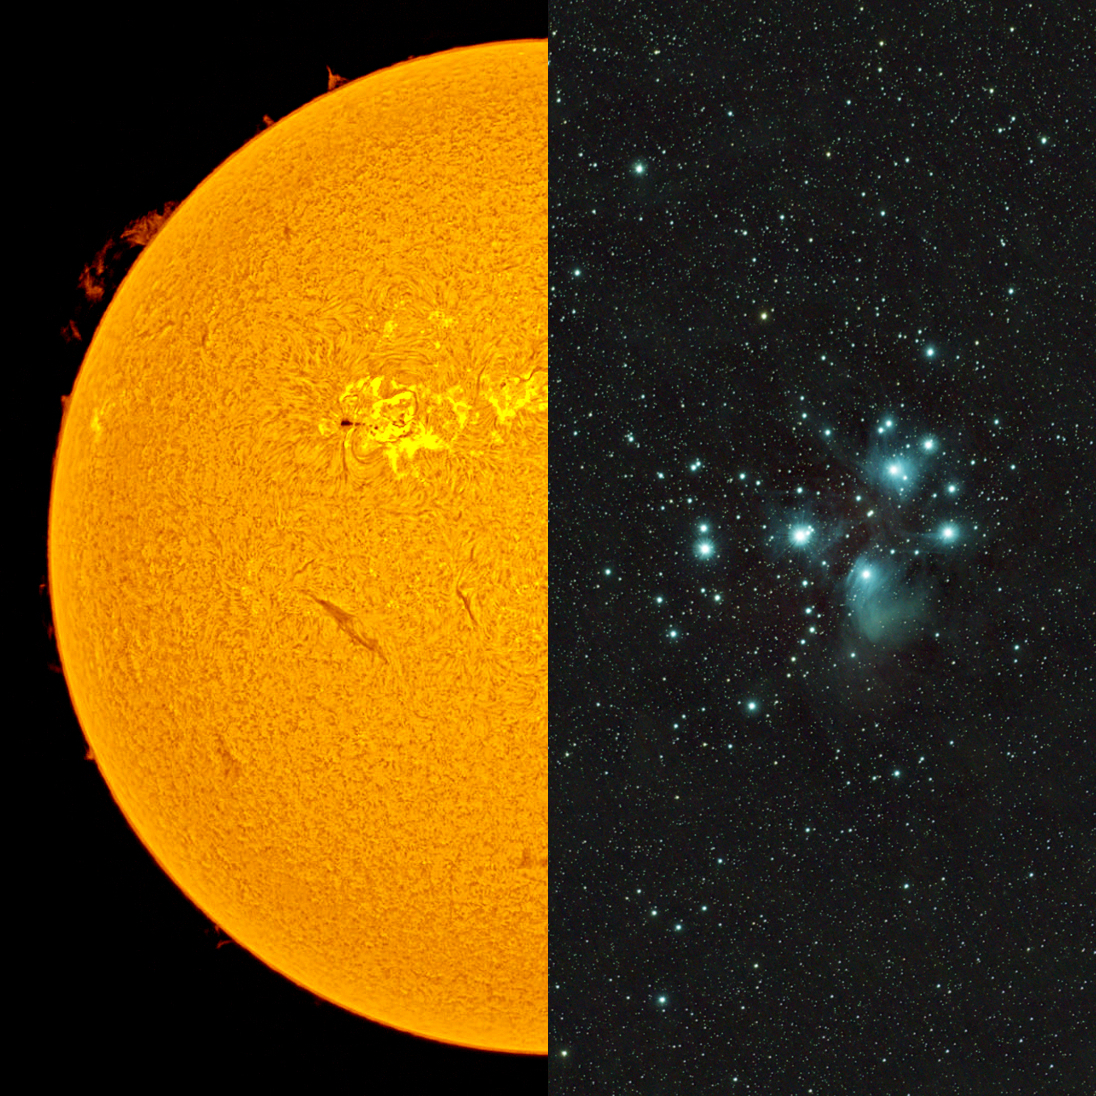 LUNT Telescopio LS60MT/B1200R&P allround ED per il Sole + cielo stellato